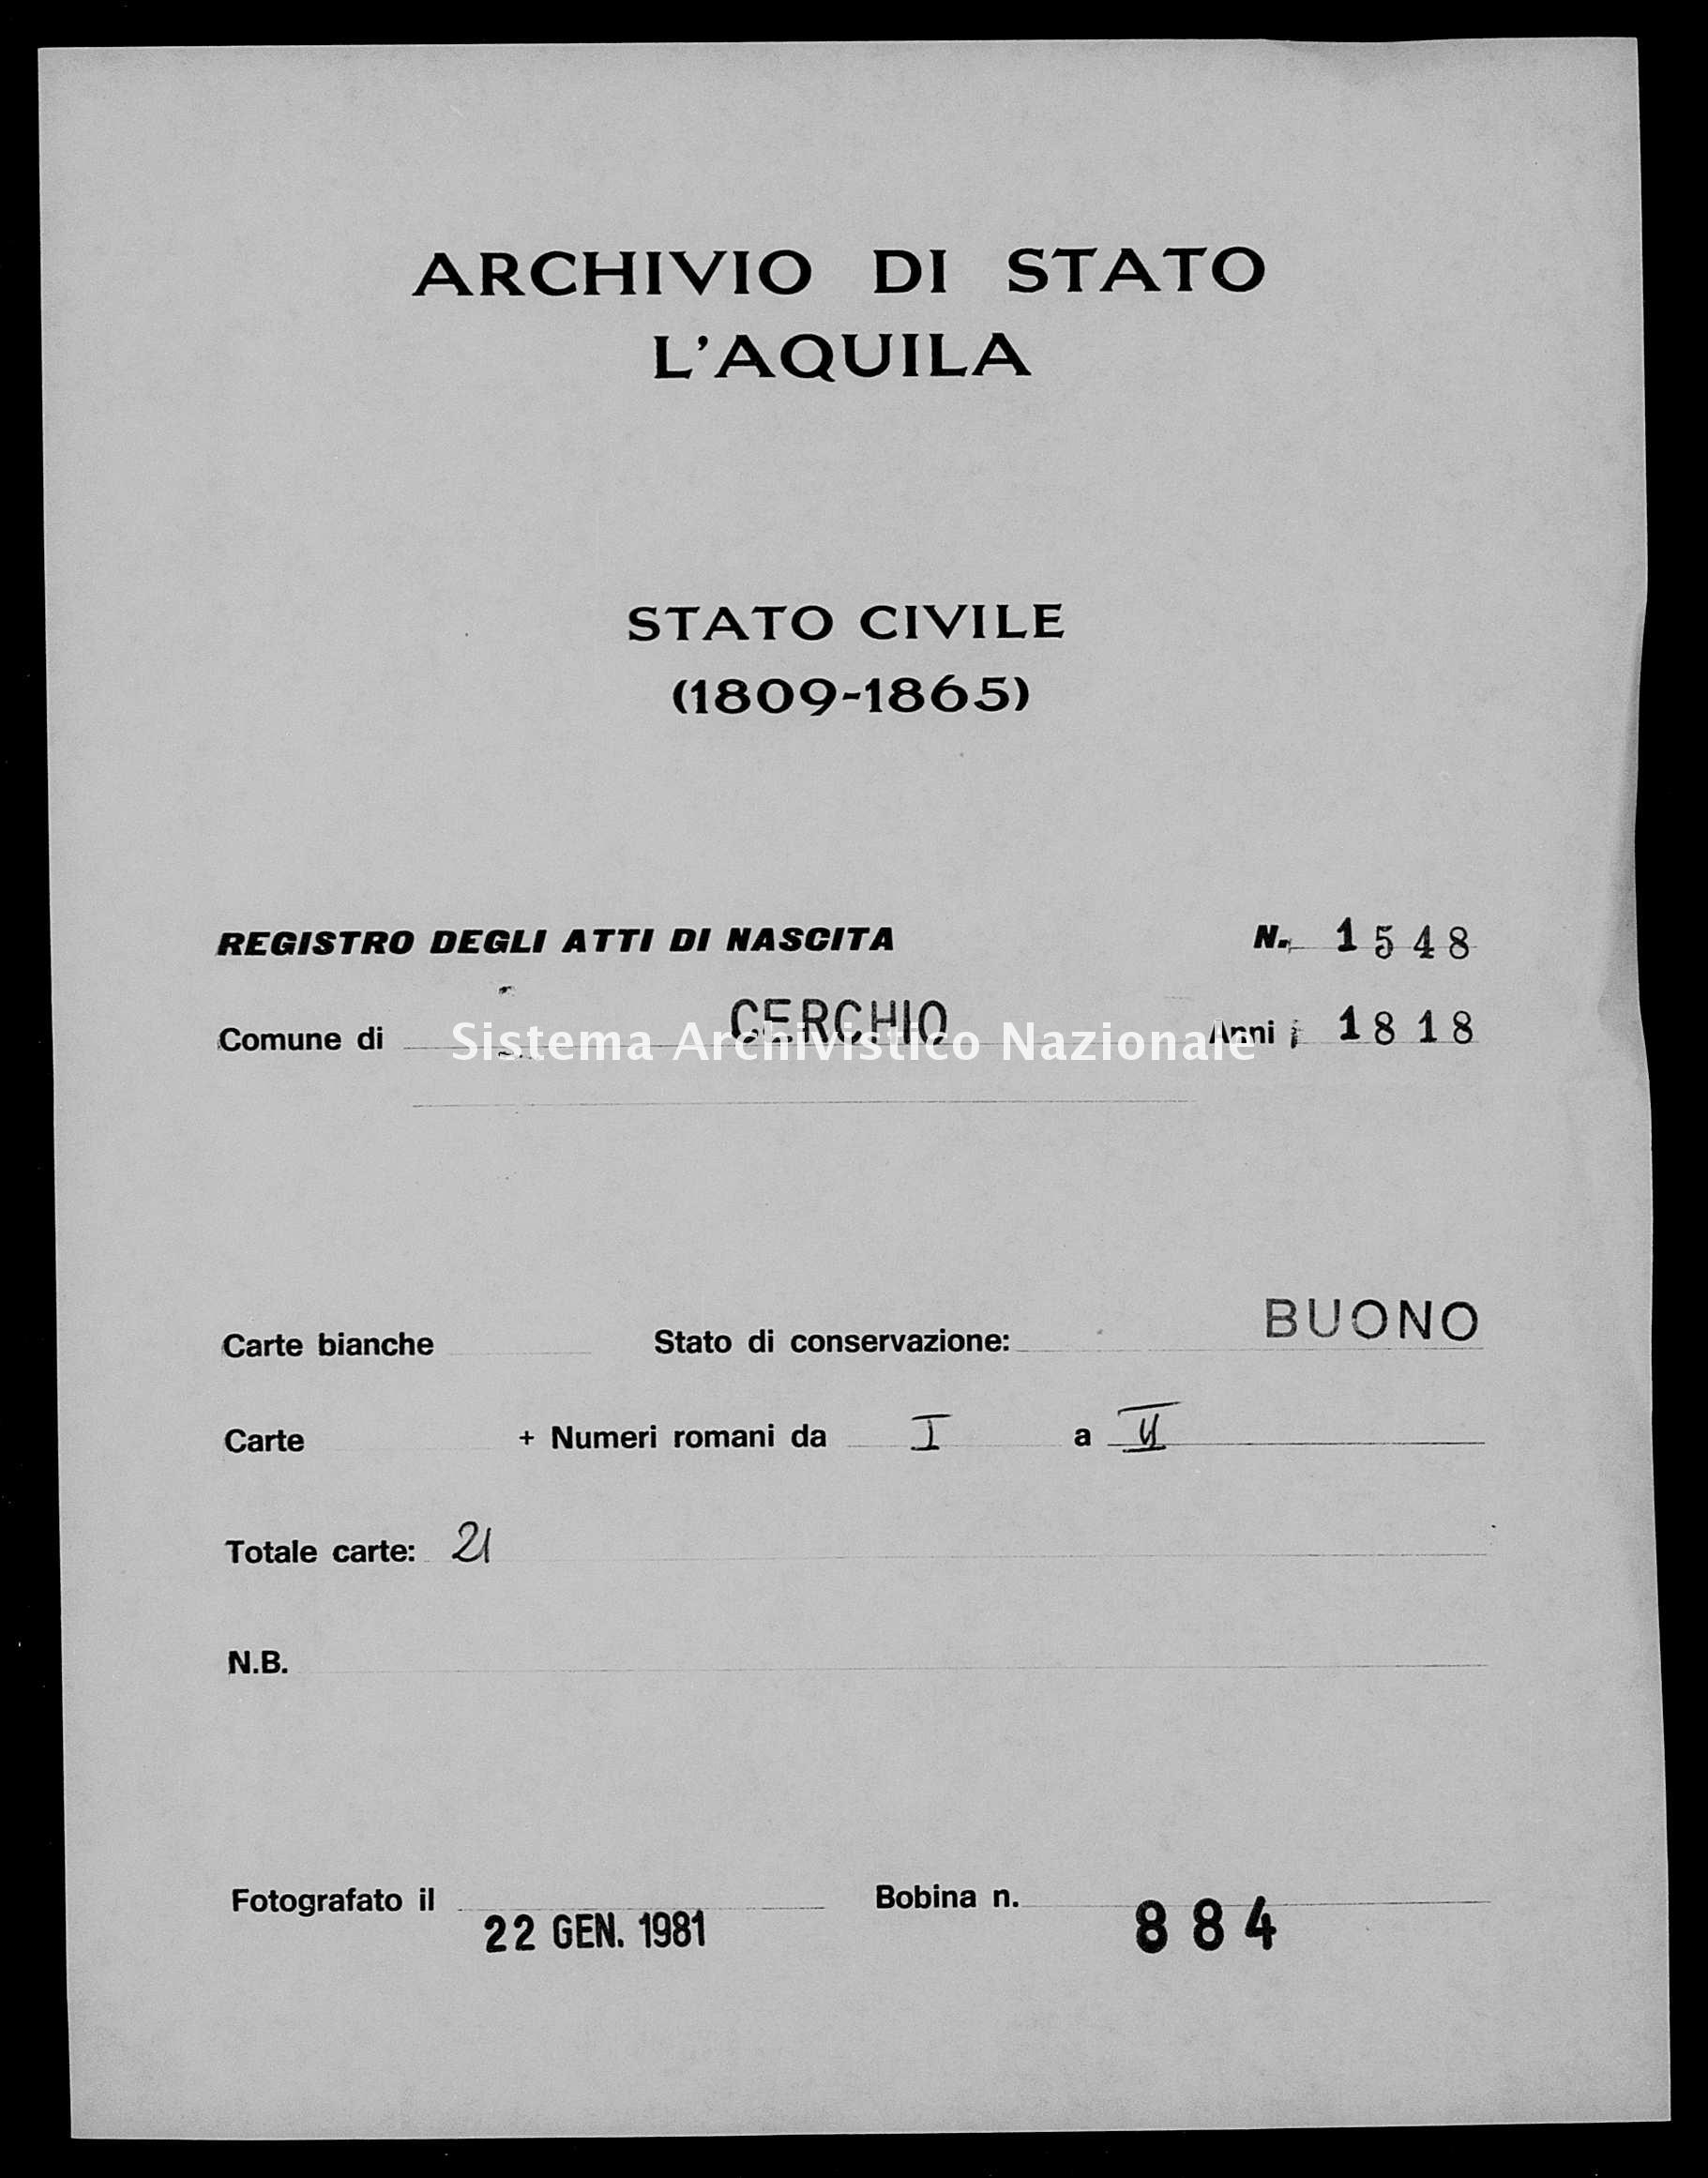 Archivio di stato di L'aquila - Stato civile della restaurazione - Cerchio - Nati - 1818 - 1548 -